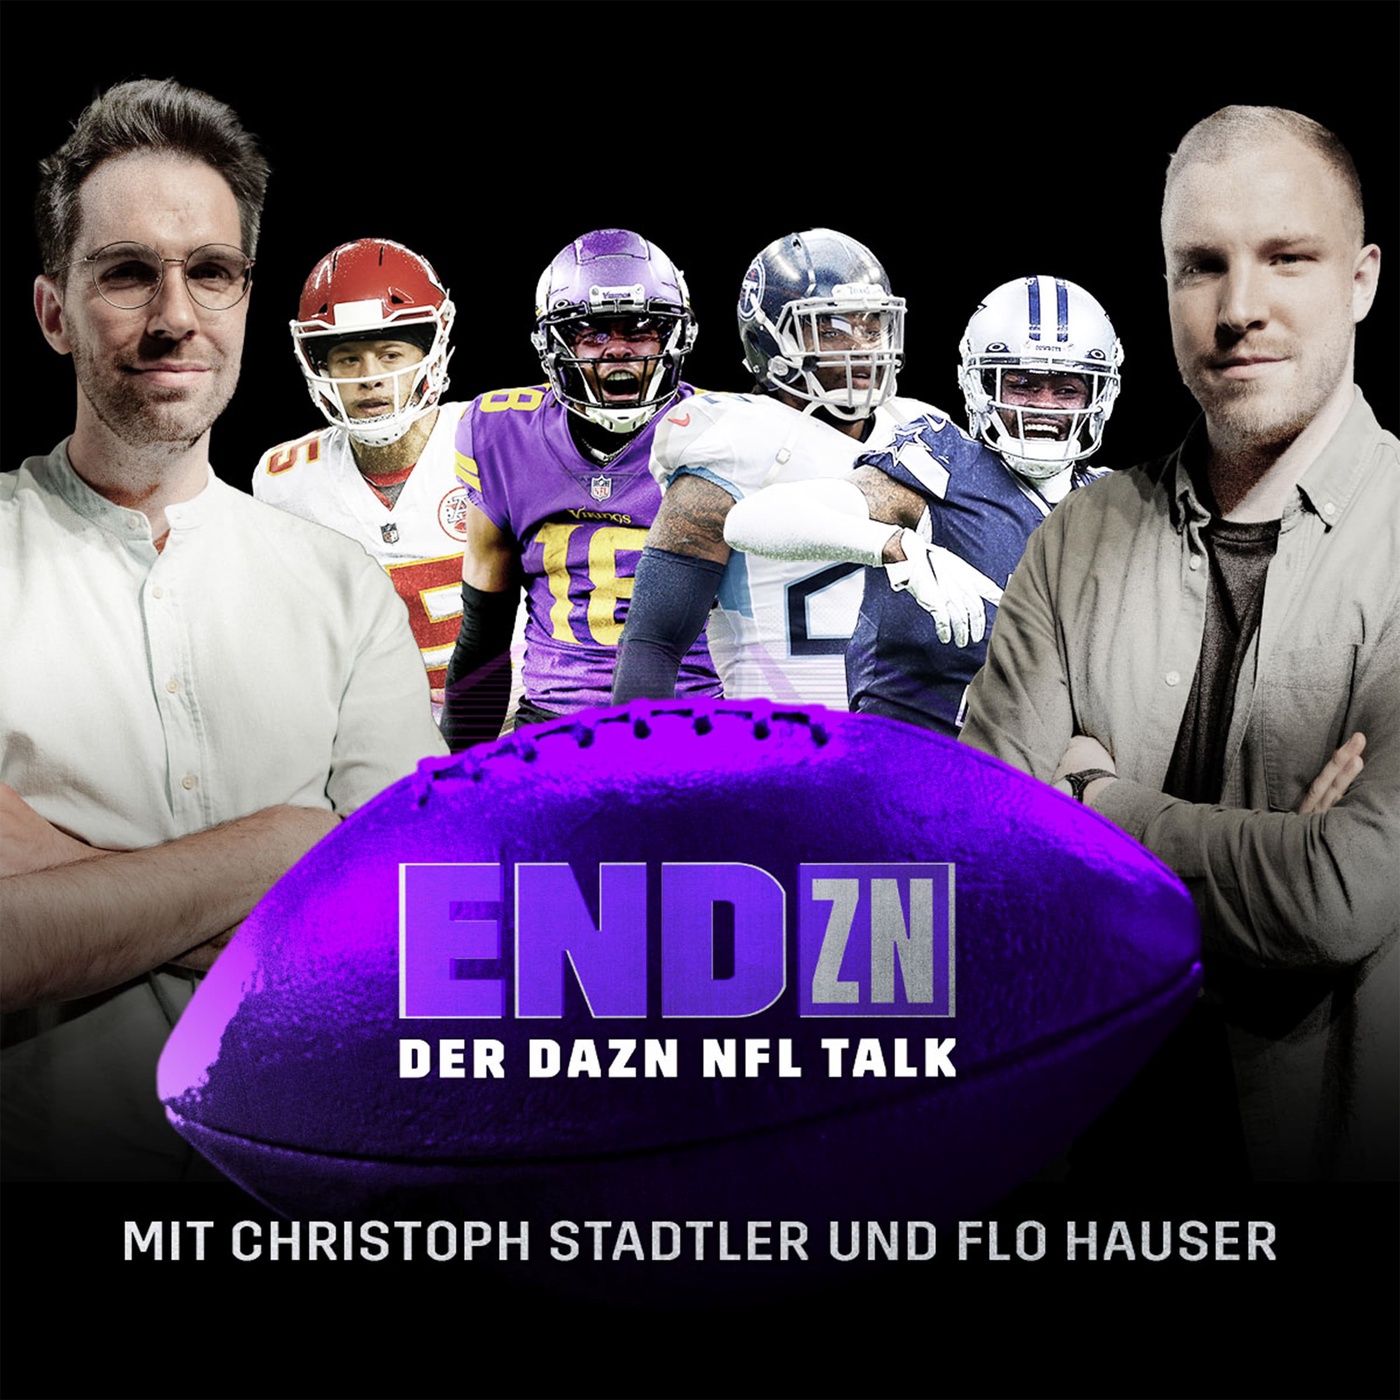 ENDZN - Der DAZN NFL Talk